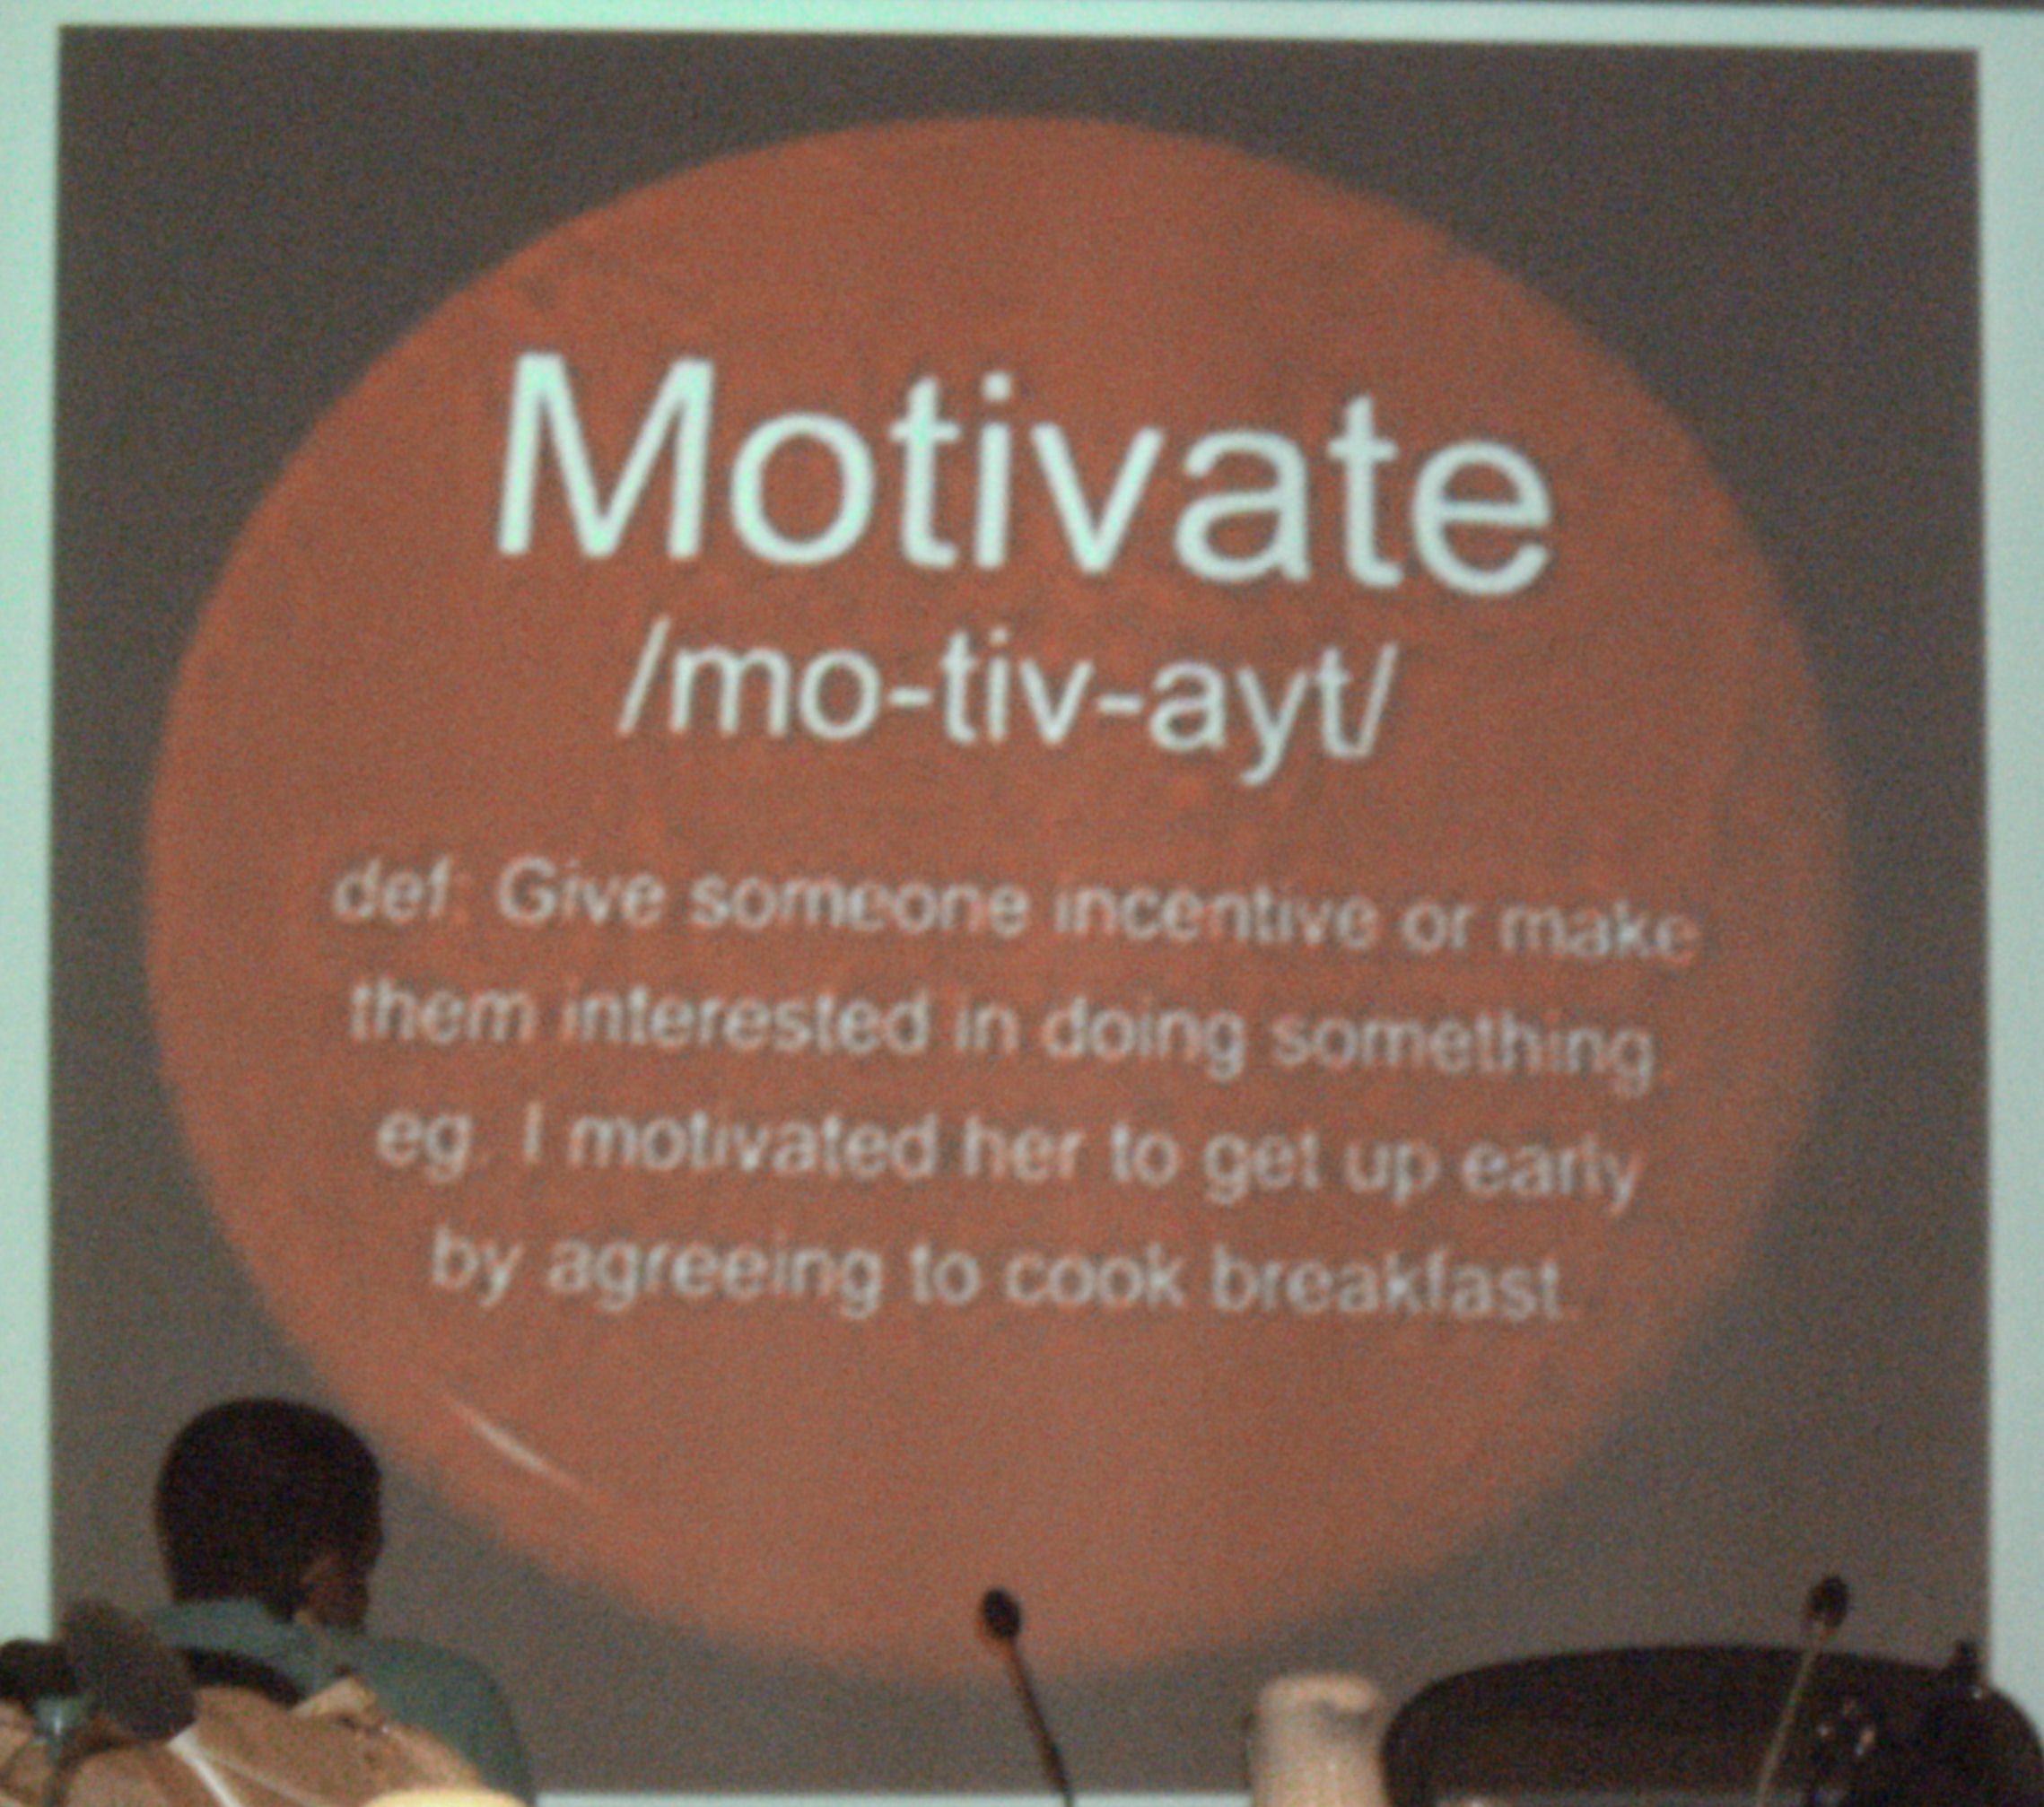 Motivate slide